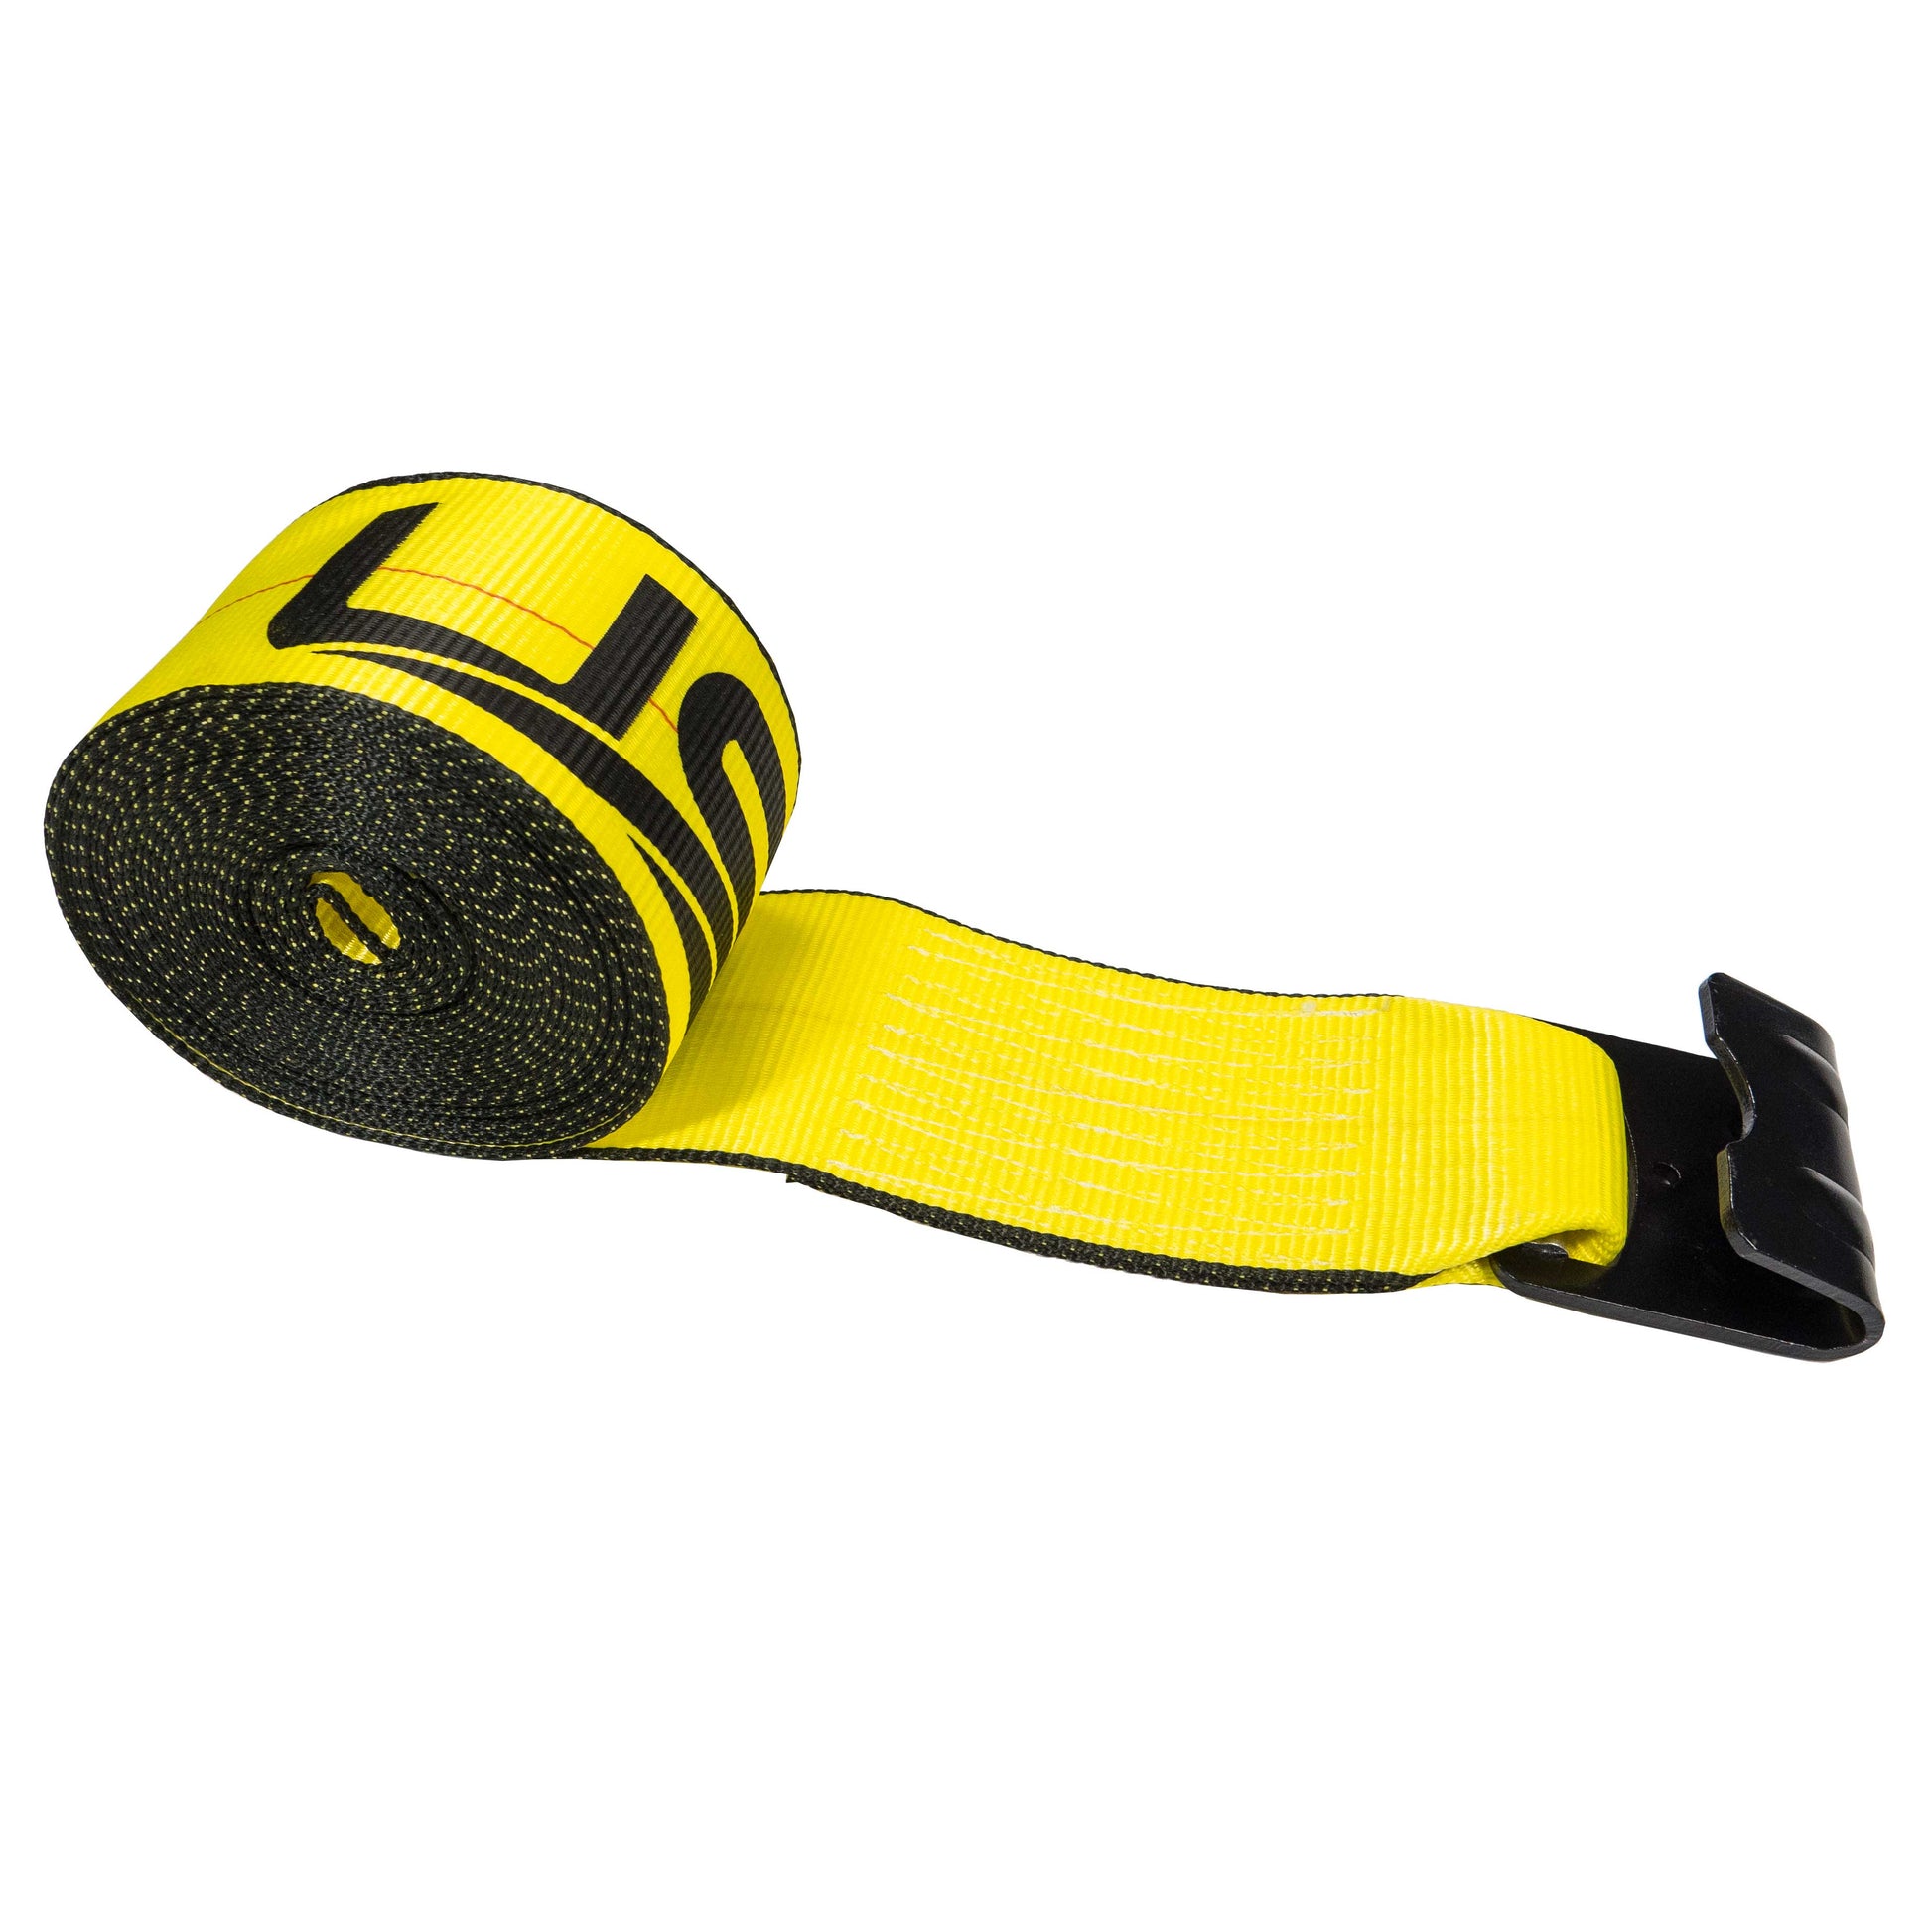 50' 4" heavy-duty yellow flat hook winch strap